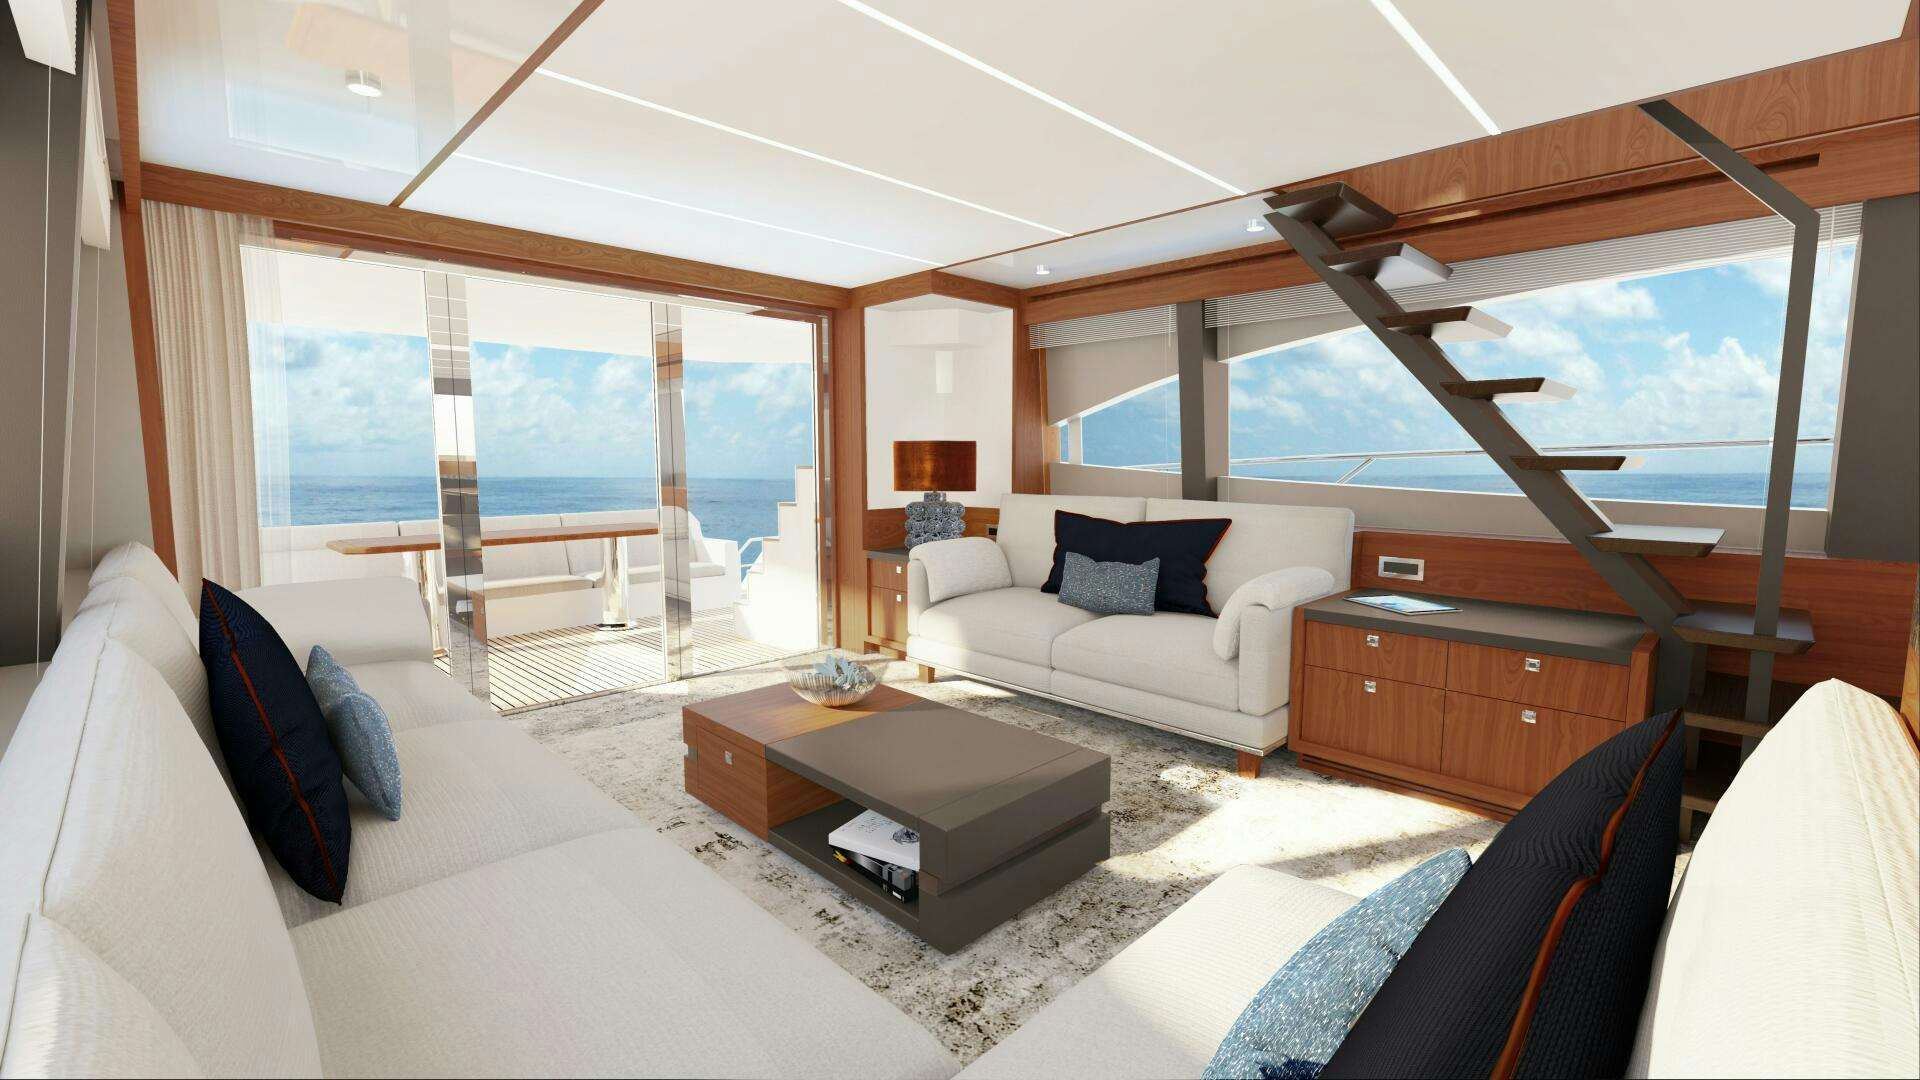 Johnson 70 flybridge
Yacht for Sale